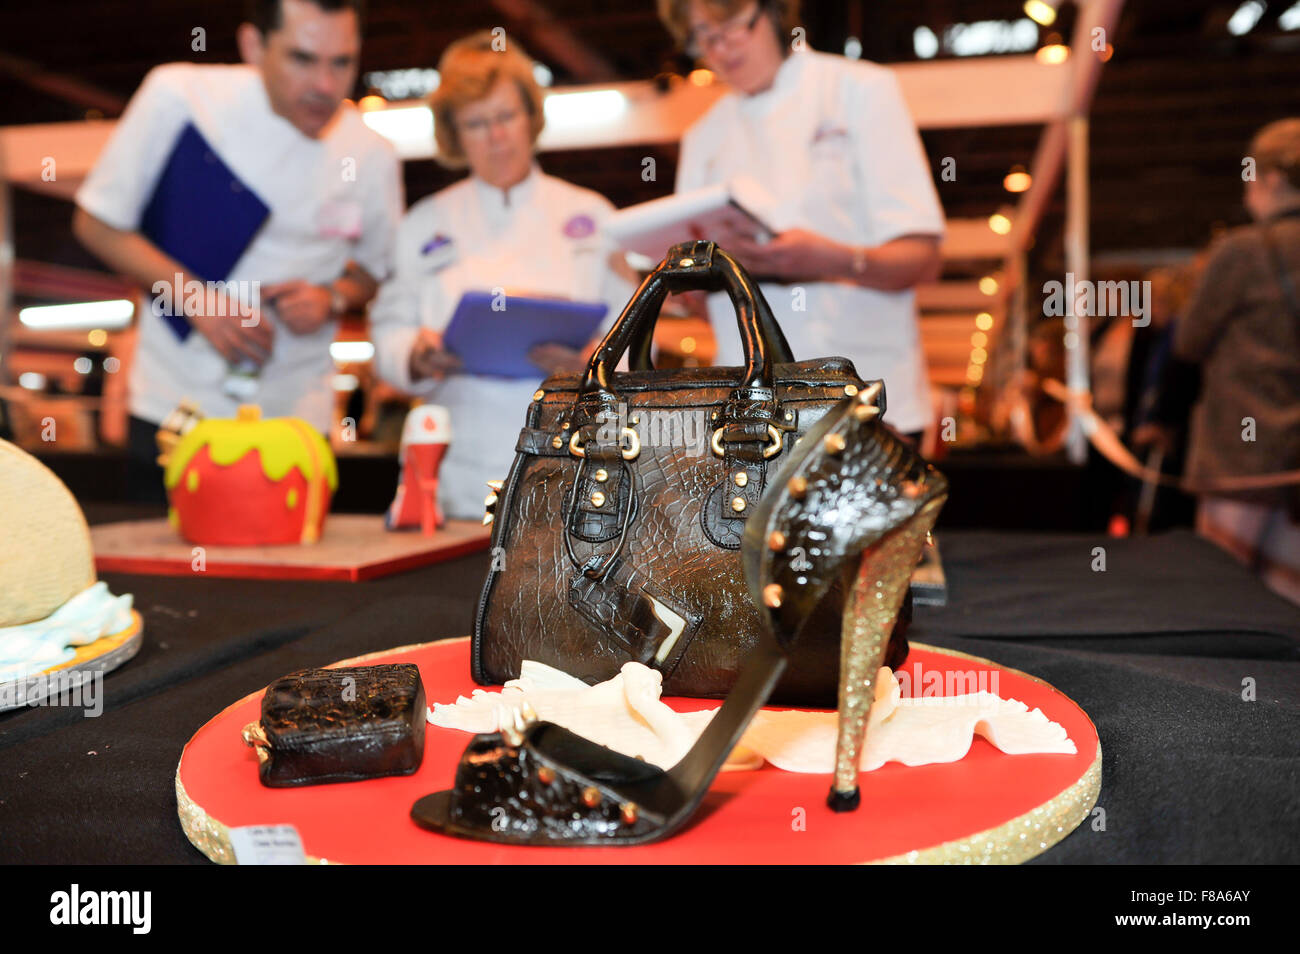 International - Le gâteau Sugarcraft Décoration de gâteau, & Baking Show qui a eu lieu à NEC - Jour 1 : Atmosphère d' où : Birmingham, Royaume-Uni Quand : 06 Nov 2015 Banque D'Images